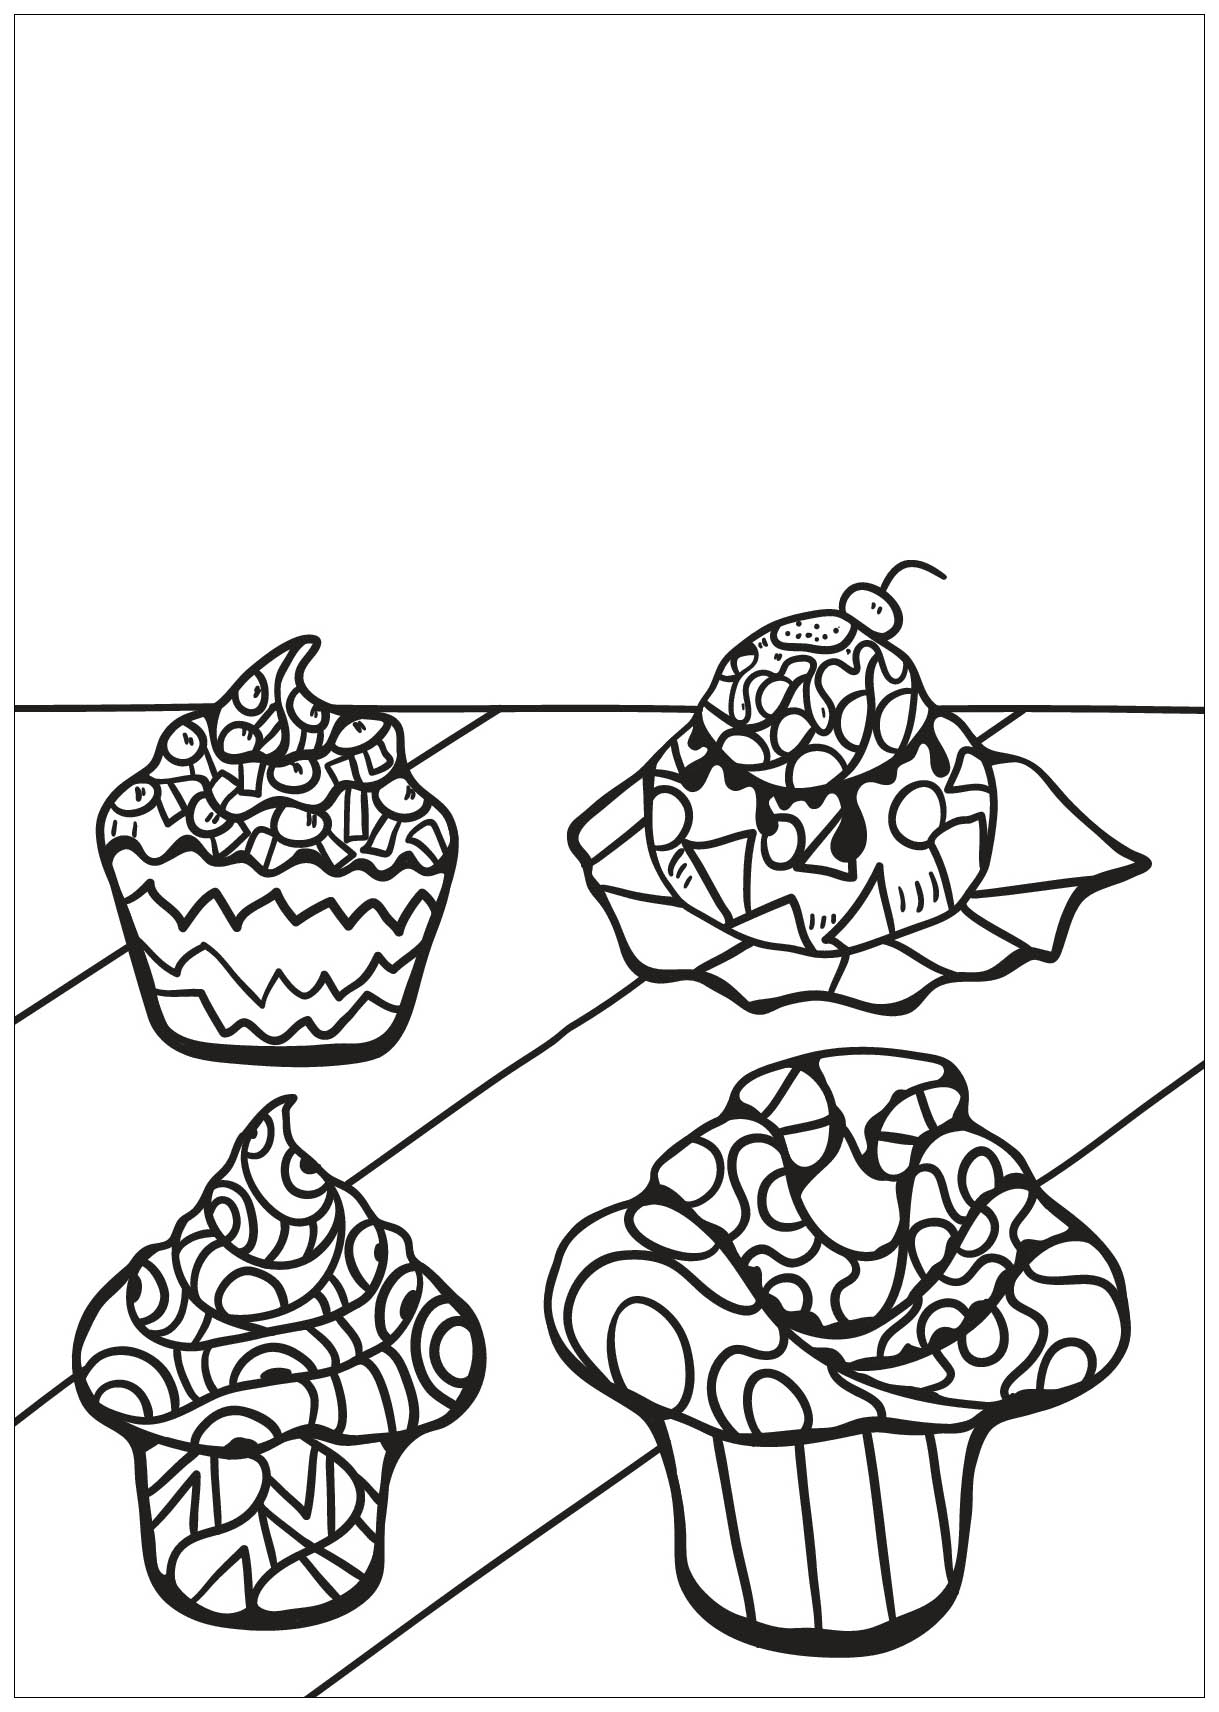 Colorear para adultos  : Cupcakes - 36